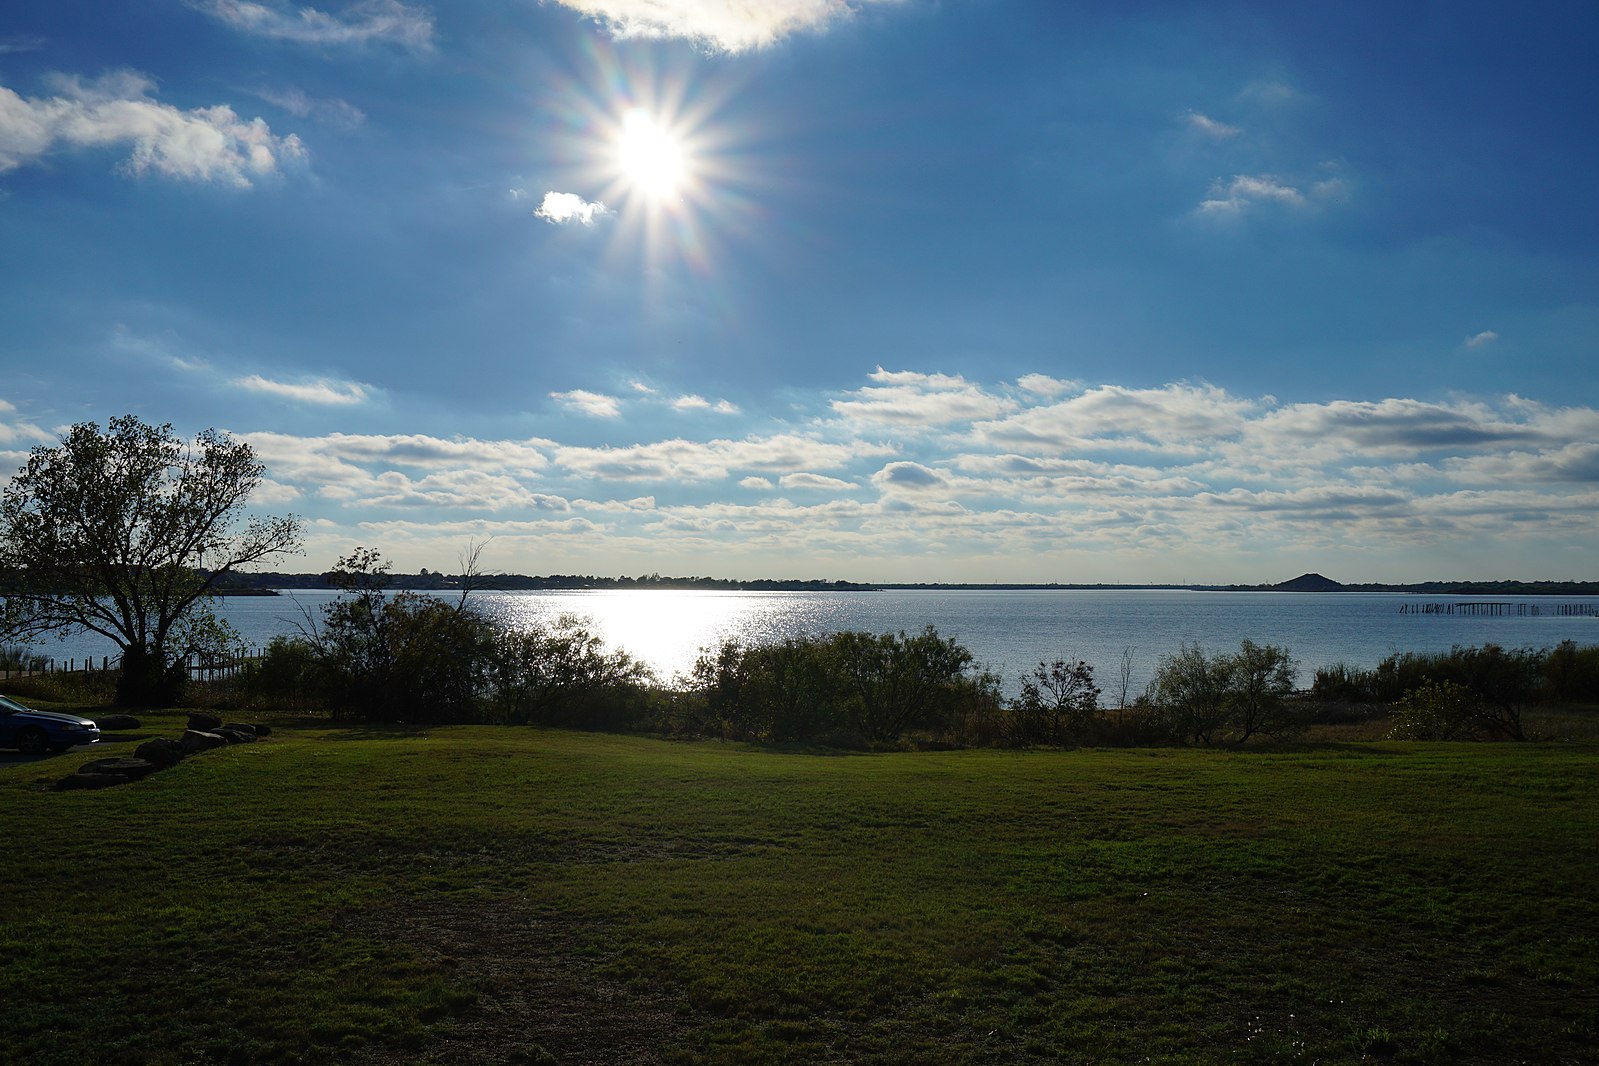 A sunny day on Lake Wichita